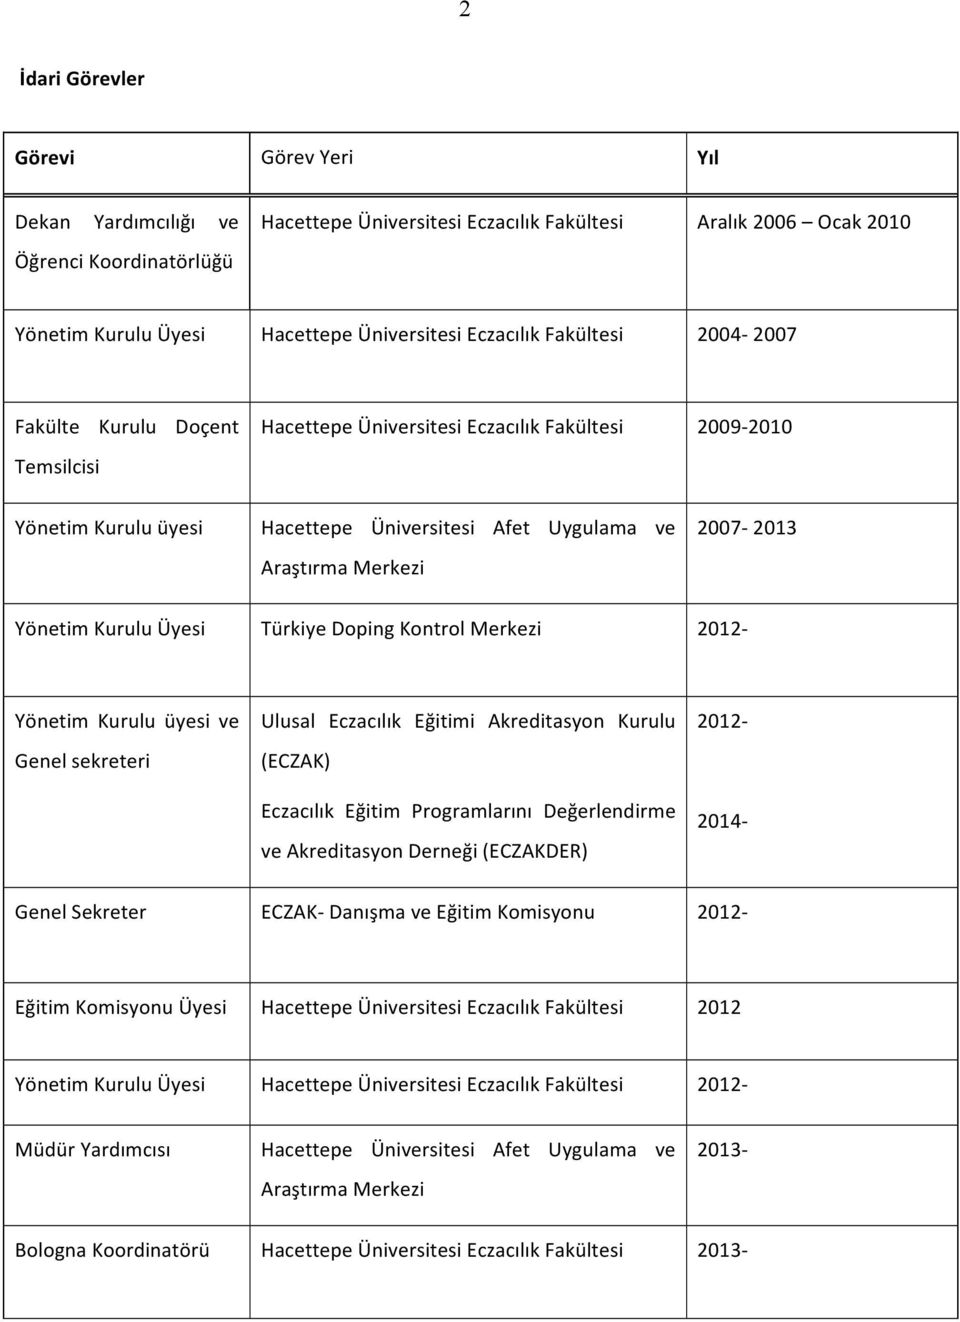 2007-2013 Yönetim Kurulu Üyesi Türkiye Doping Kontrol Merkezi 2012- Yönetim Kurulu üyesi ve Genel sekreteri Ulusal Eczacılık Eğitimi Akreditasyon Kurulu (ECZAK) Eczacılık Eğitim Programlarını